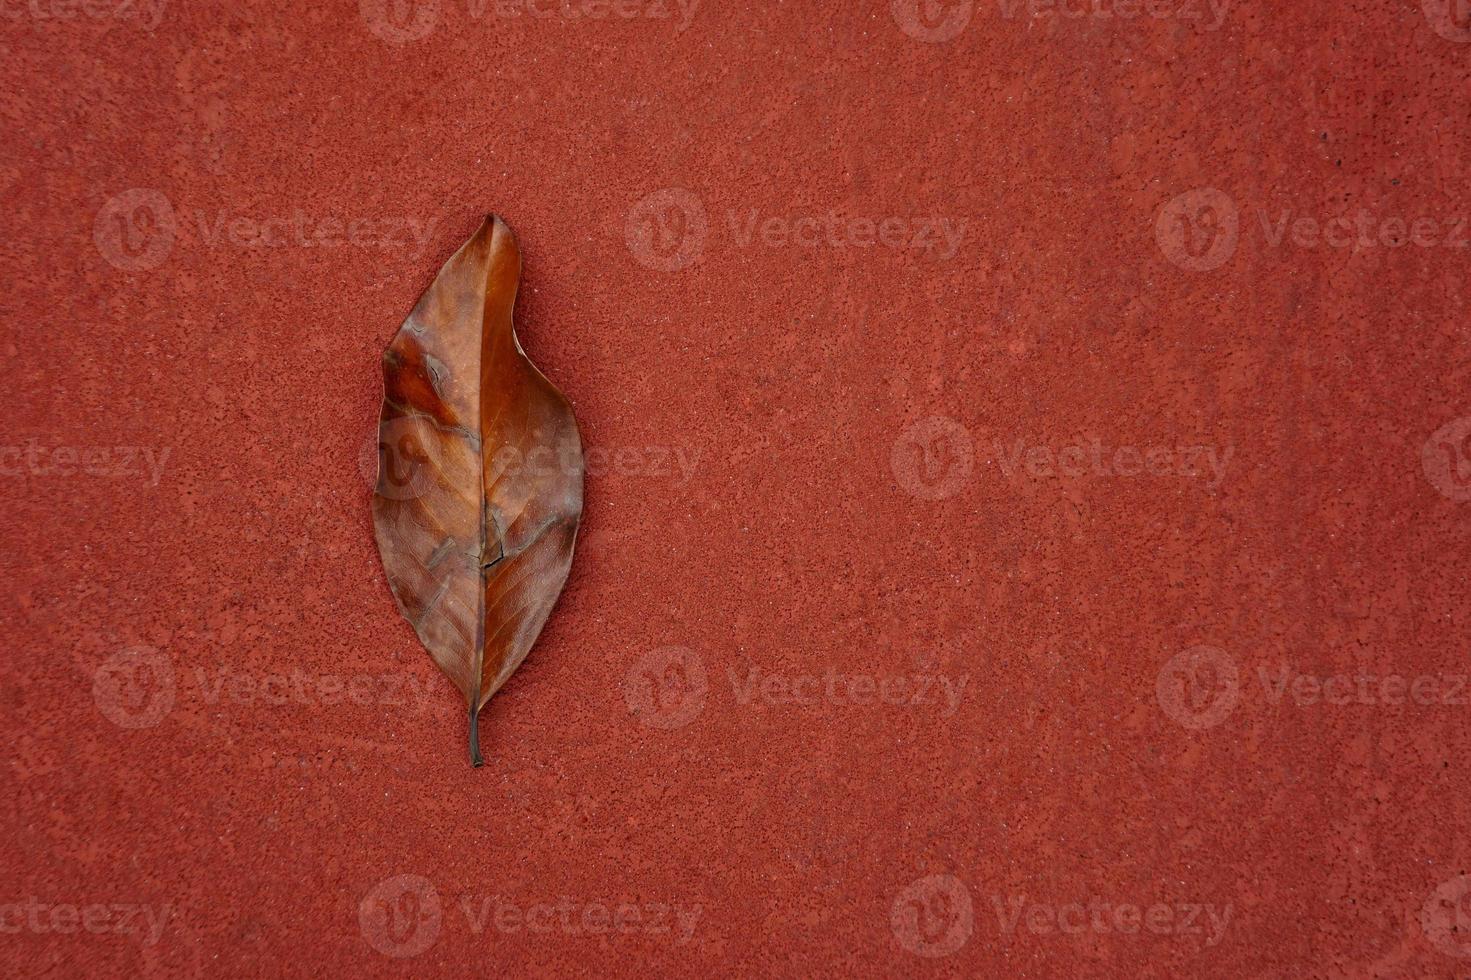 hoja marrón en la temporada de otoño foto